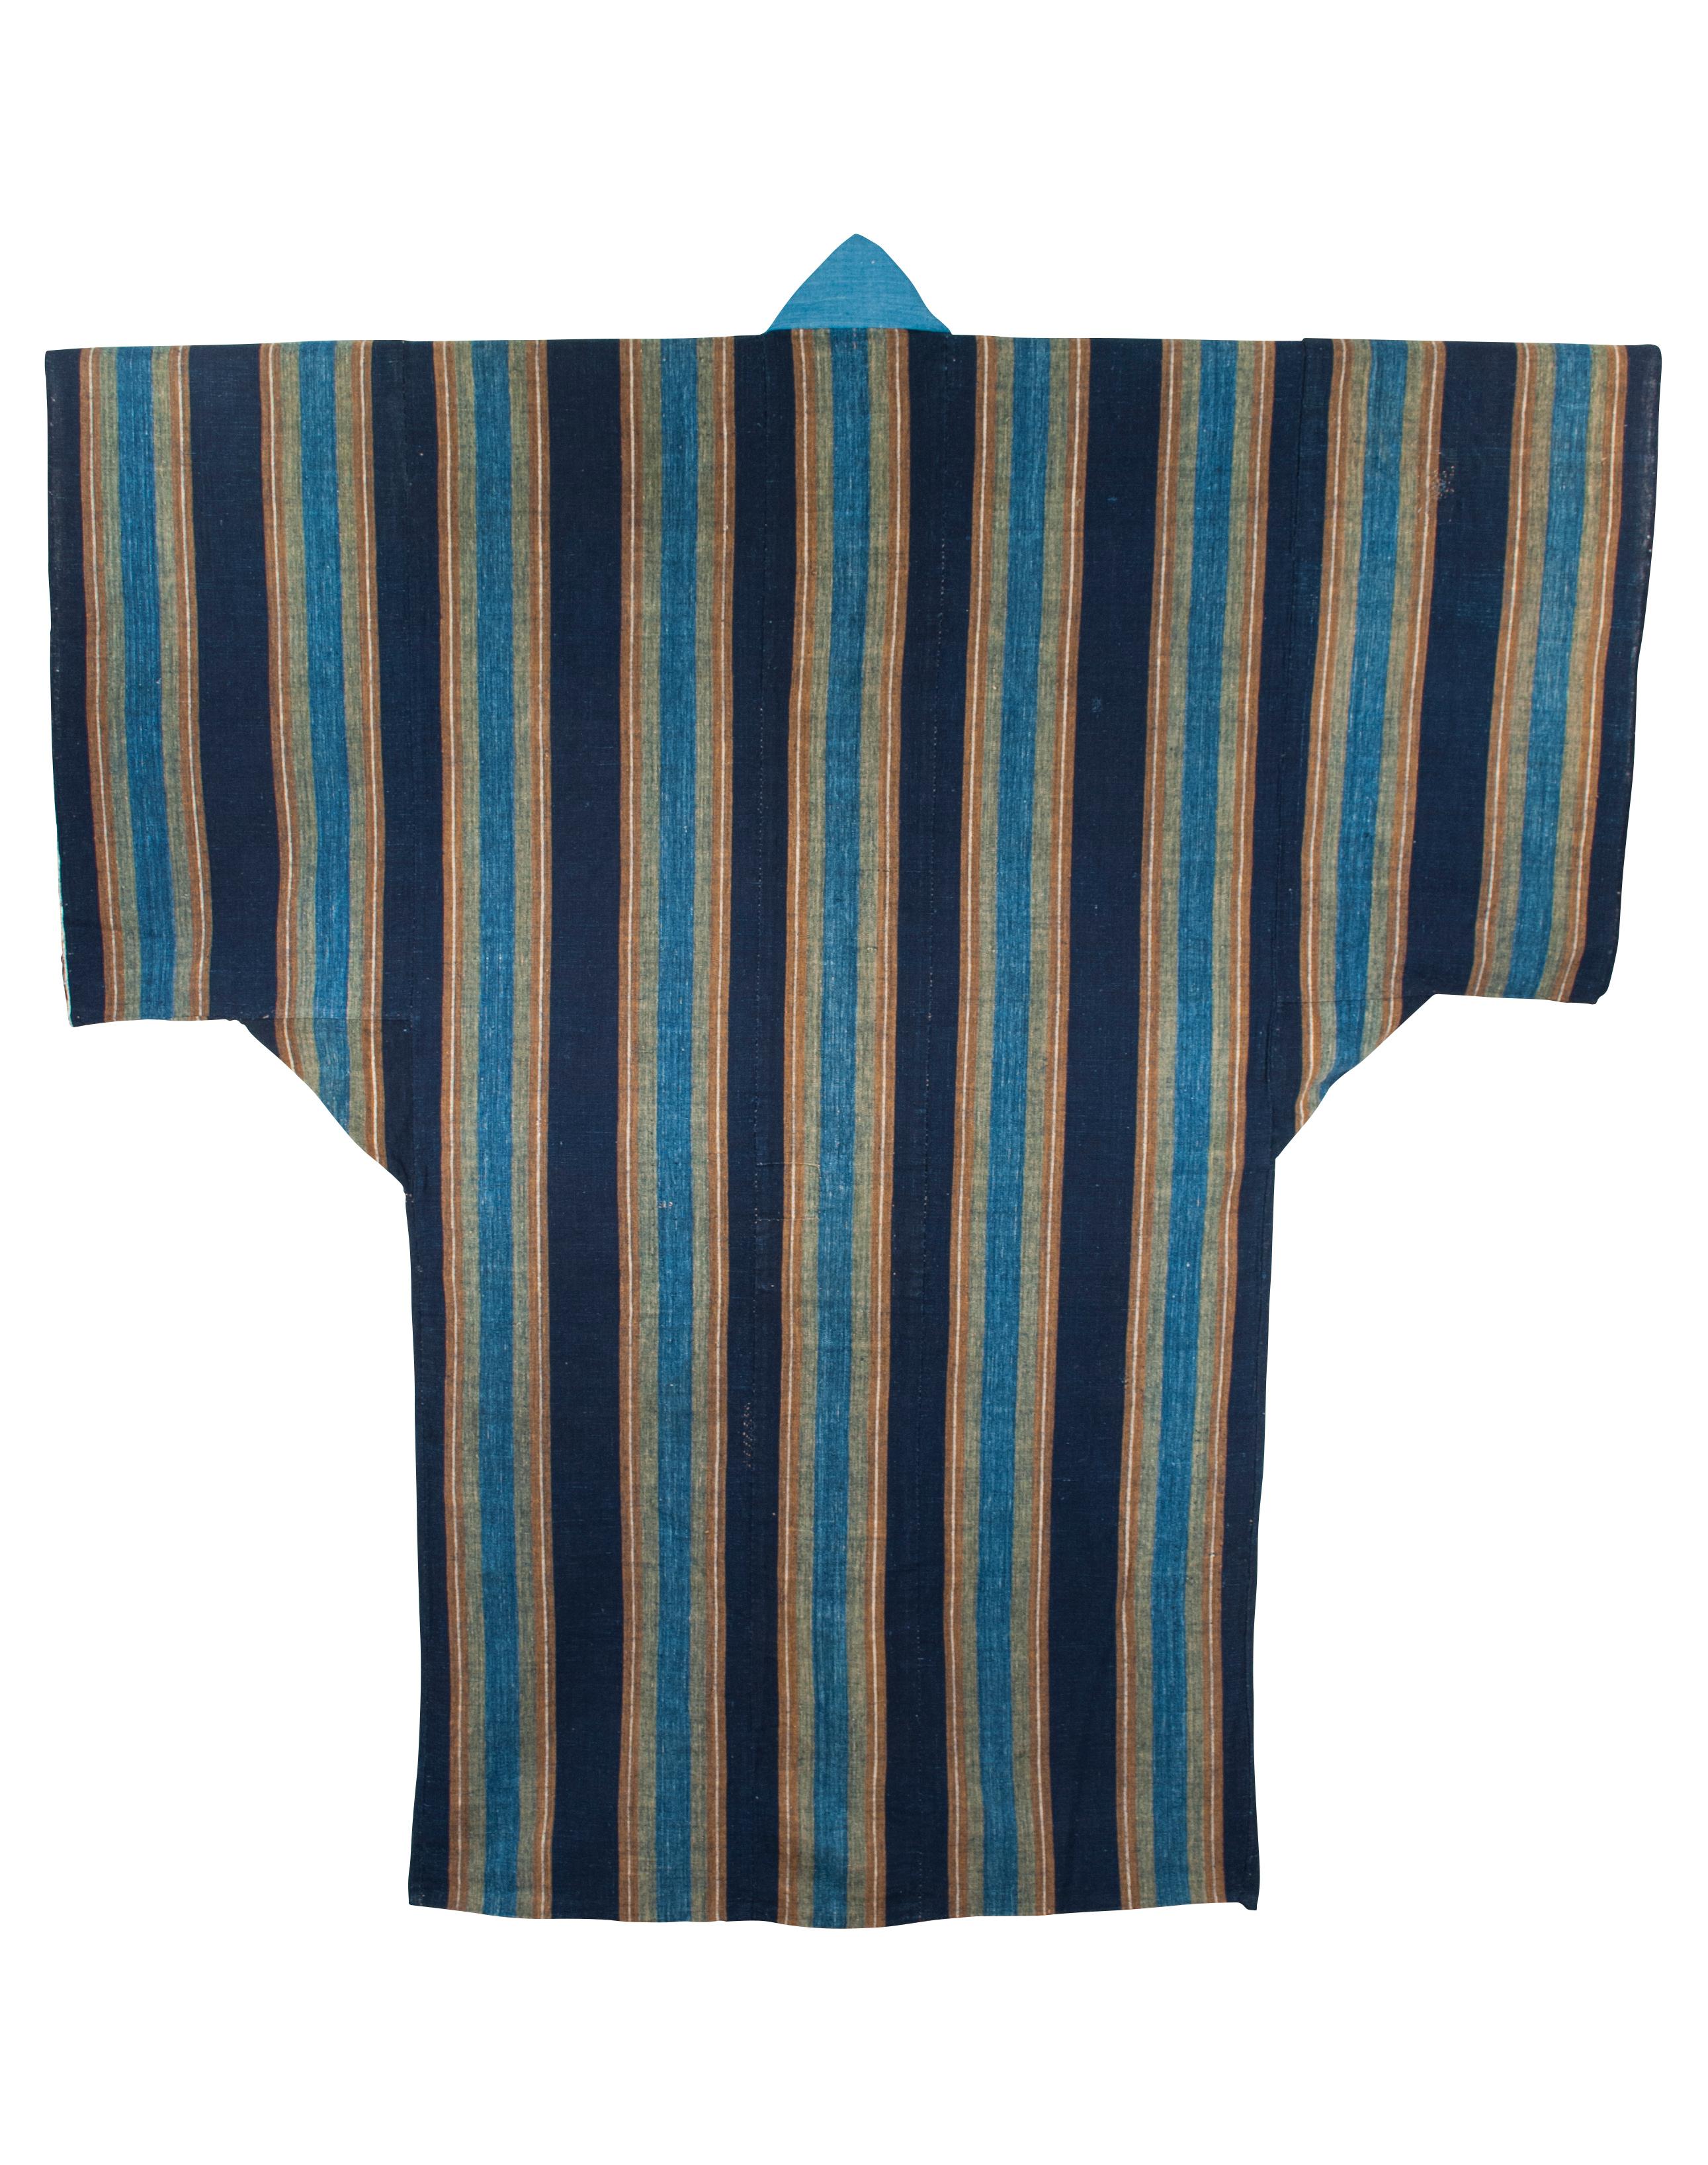 Schlafender Kimono aus der späten Meiji-Zeit / Yogi, Japan

Yogi sind eine Art übergroßer Schlafkimono, der traditionell in Japan verwendet wird. Dieser Kimono war ähnlich wie ein Futon mit Baumwollwatte ausgestopft. Die Baumwolle und das Futter